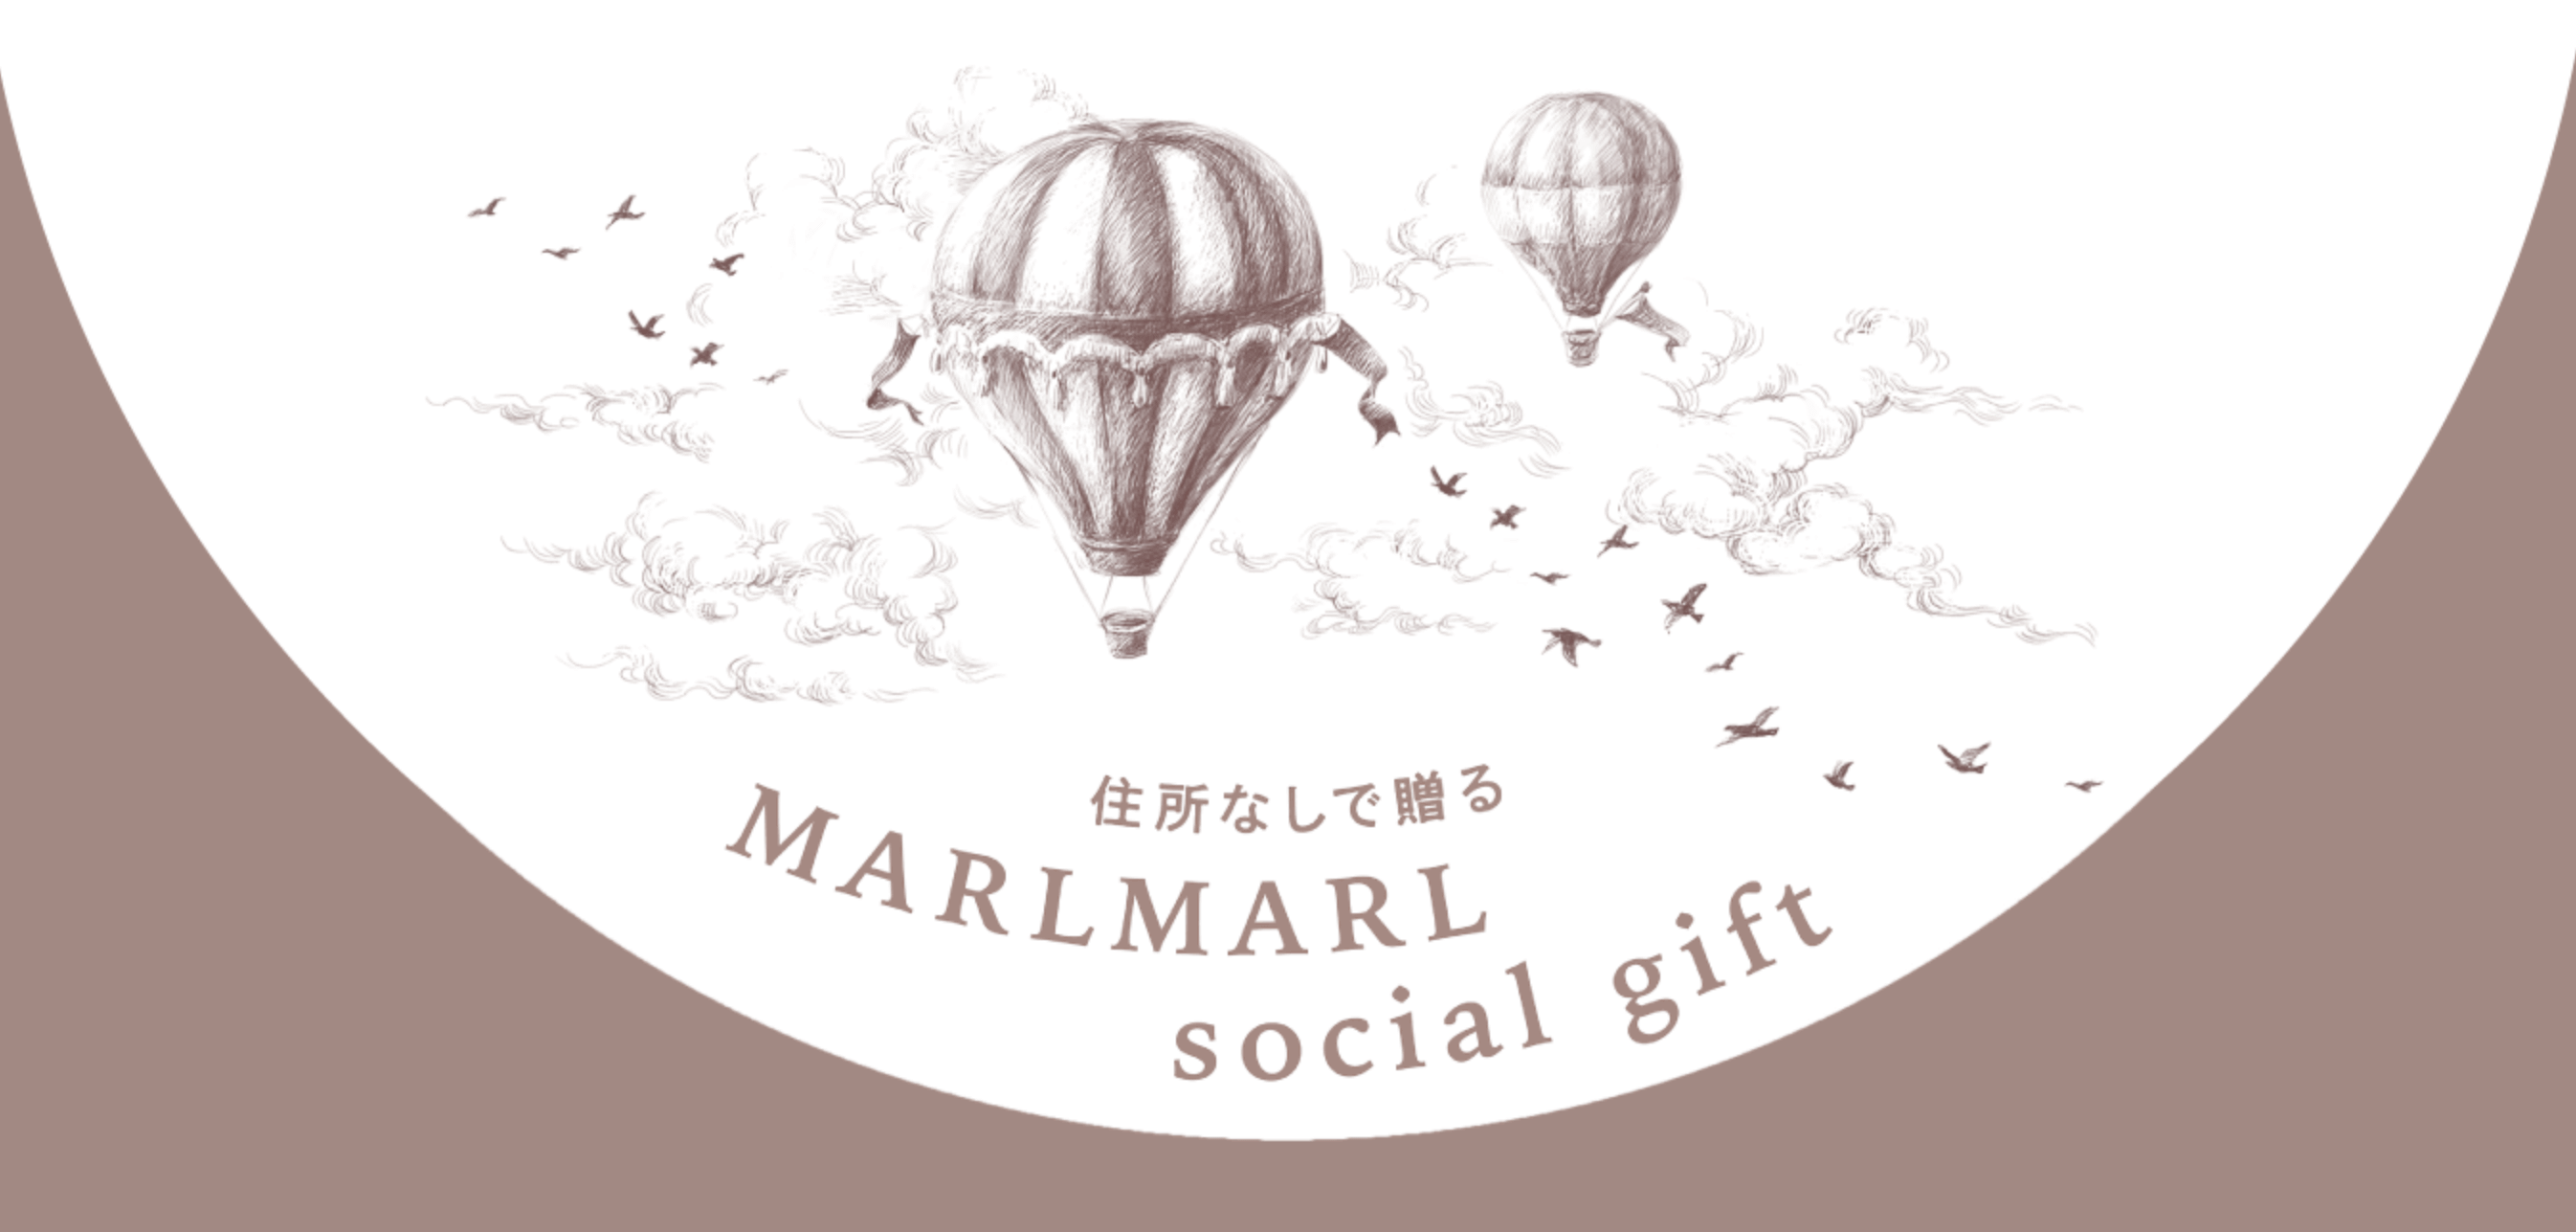 新しいギフト方法。「住所なしで贈る MARLMARL social gift」をリリース